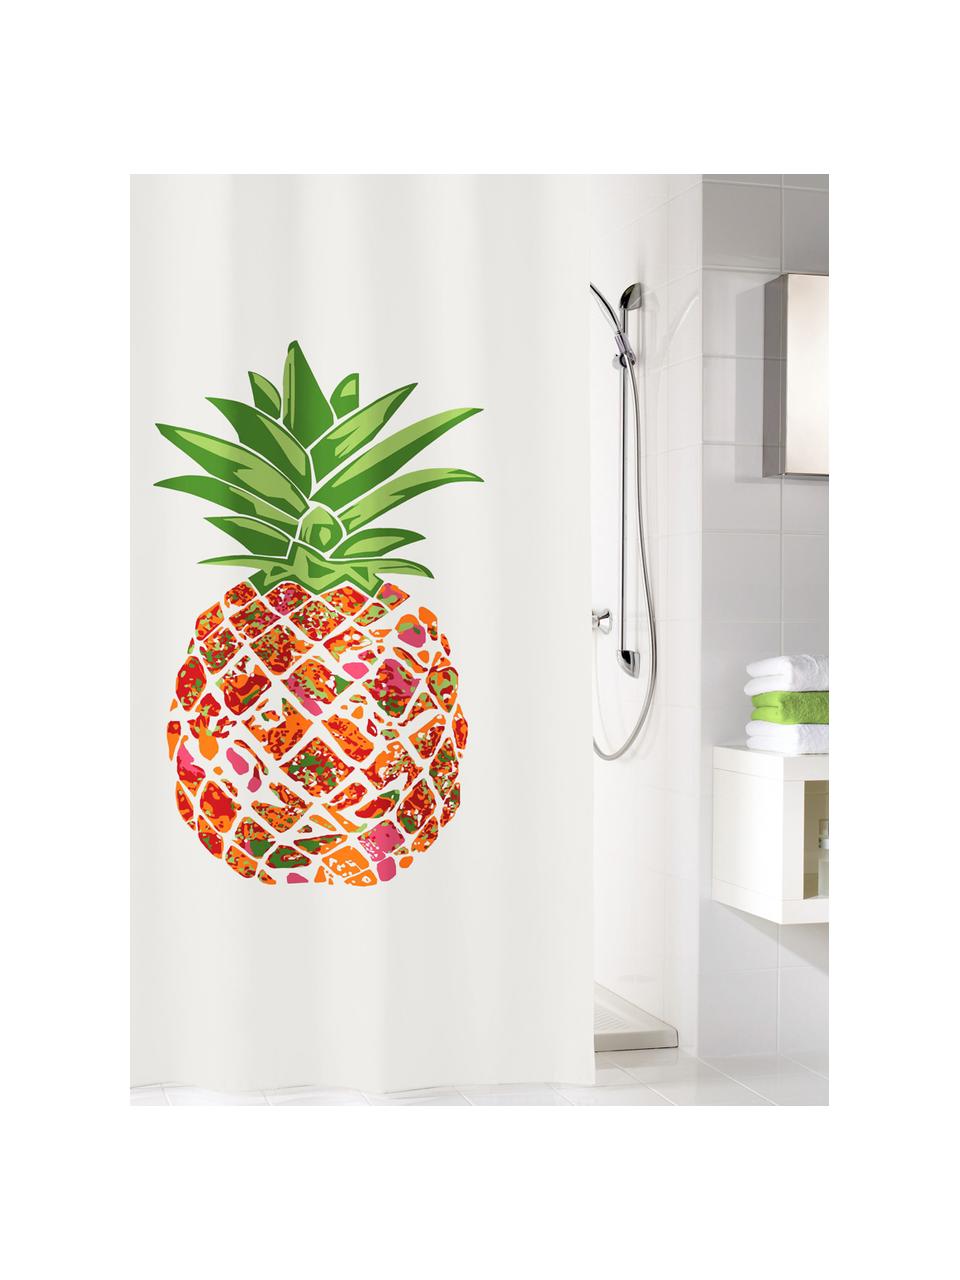 Zasłona prysznicowa Pineapple, 100% poliester
Produkt odporny na wilgoć, niewodoodporny, Biały, zielony, pomarańczowy, czerwony, S 180 x D 200 cm